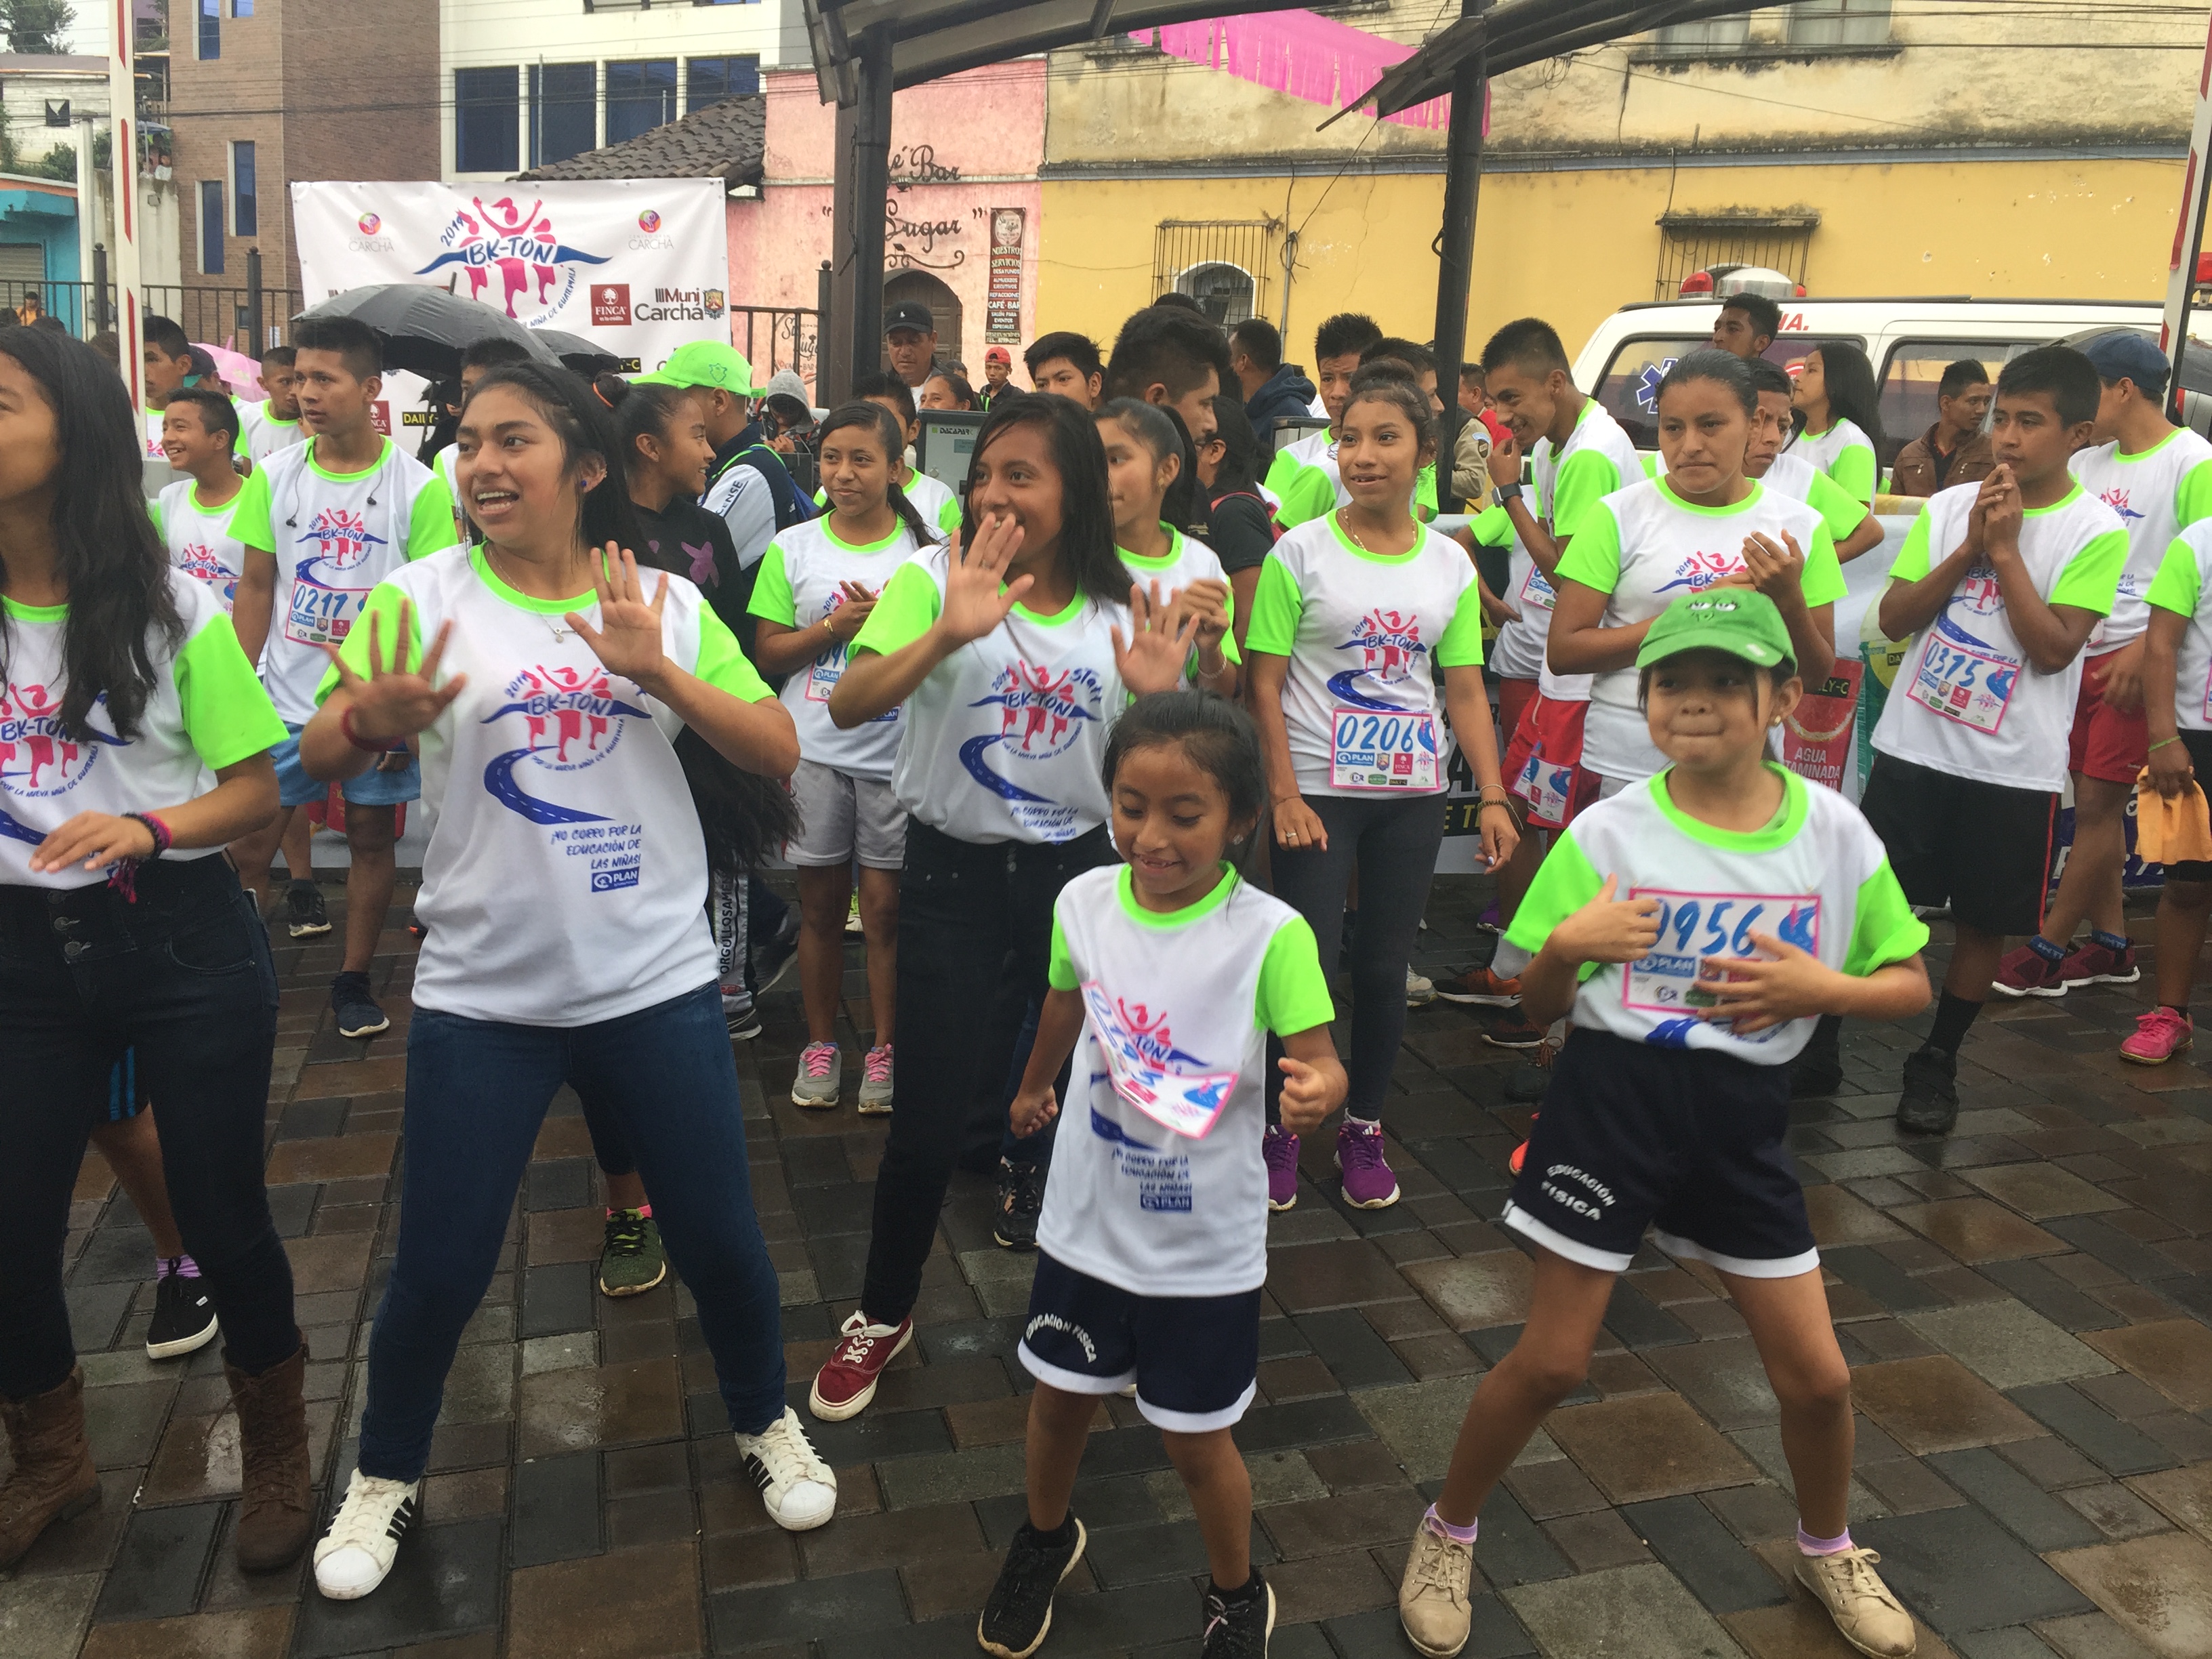 El objetivo de la BK-Ton 2019 es recaudar fondos para financiar 200 becas para niñas. (Foto Prensa Libre: Cortesía)